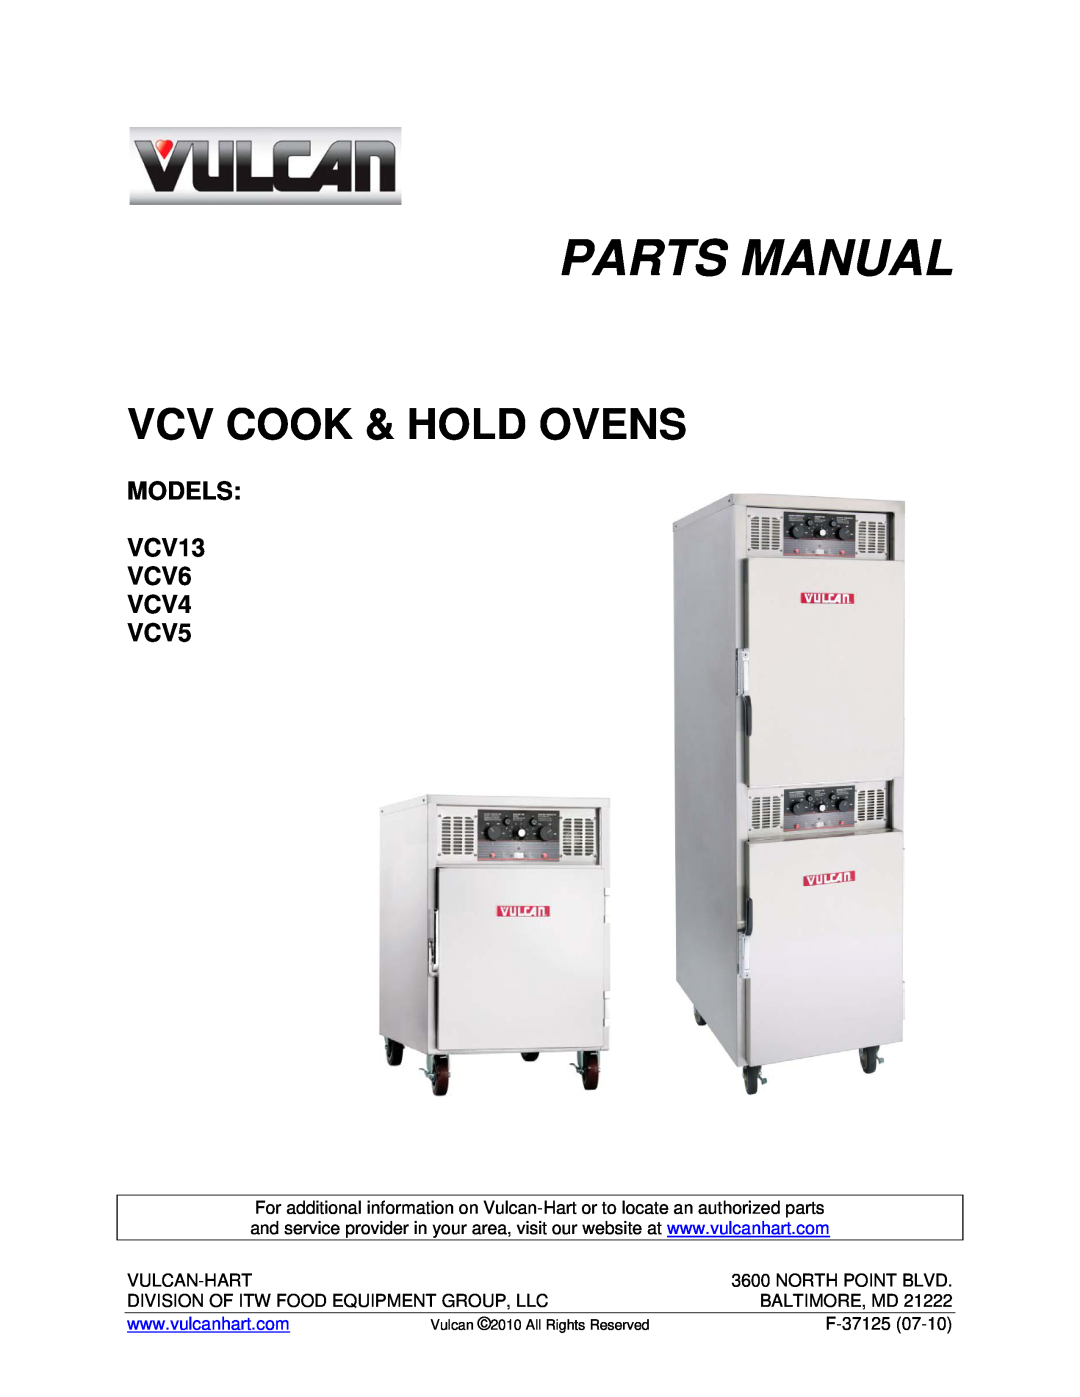 Vulcan-Hart manual Parts Manual, Vcv Cook & Hold Ovens, MODELS VCV13 VCV6 VCV4 VCV5, Vulcan-Hart, North Point Blvd 